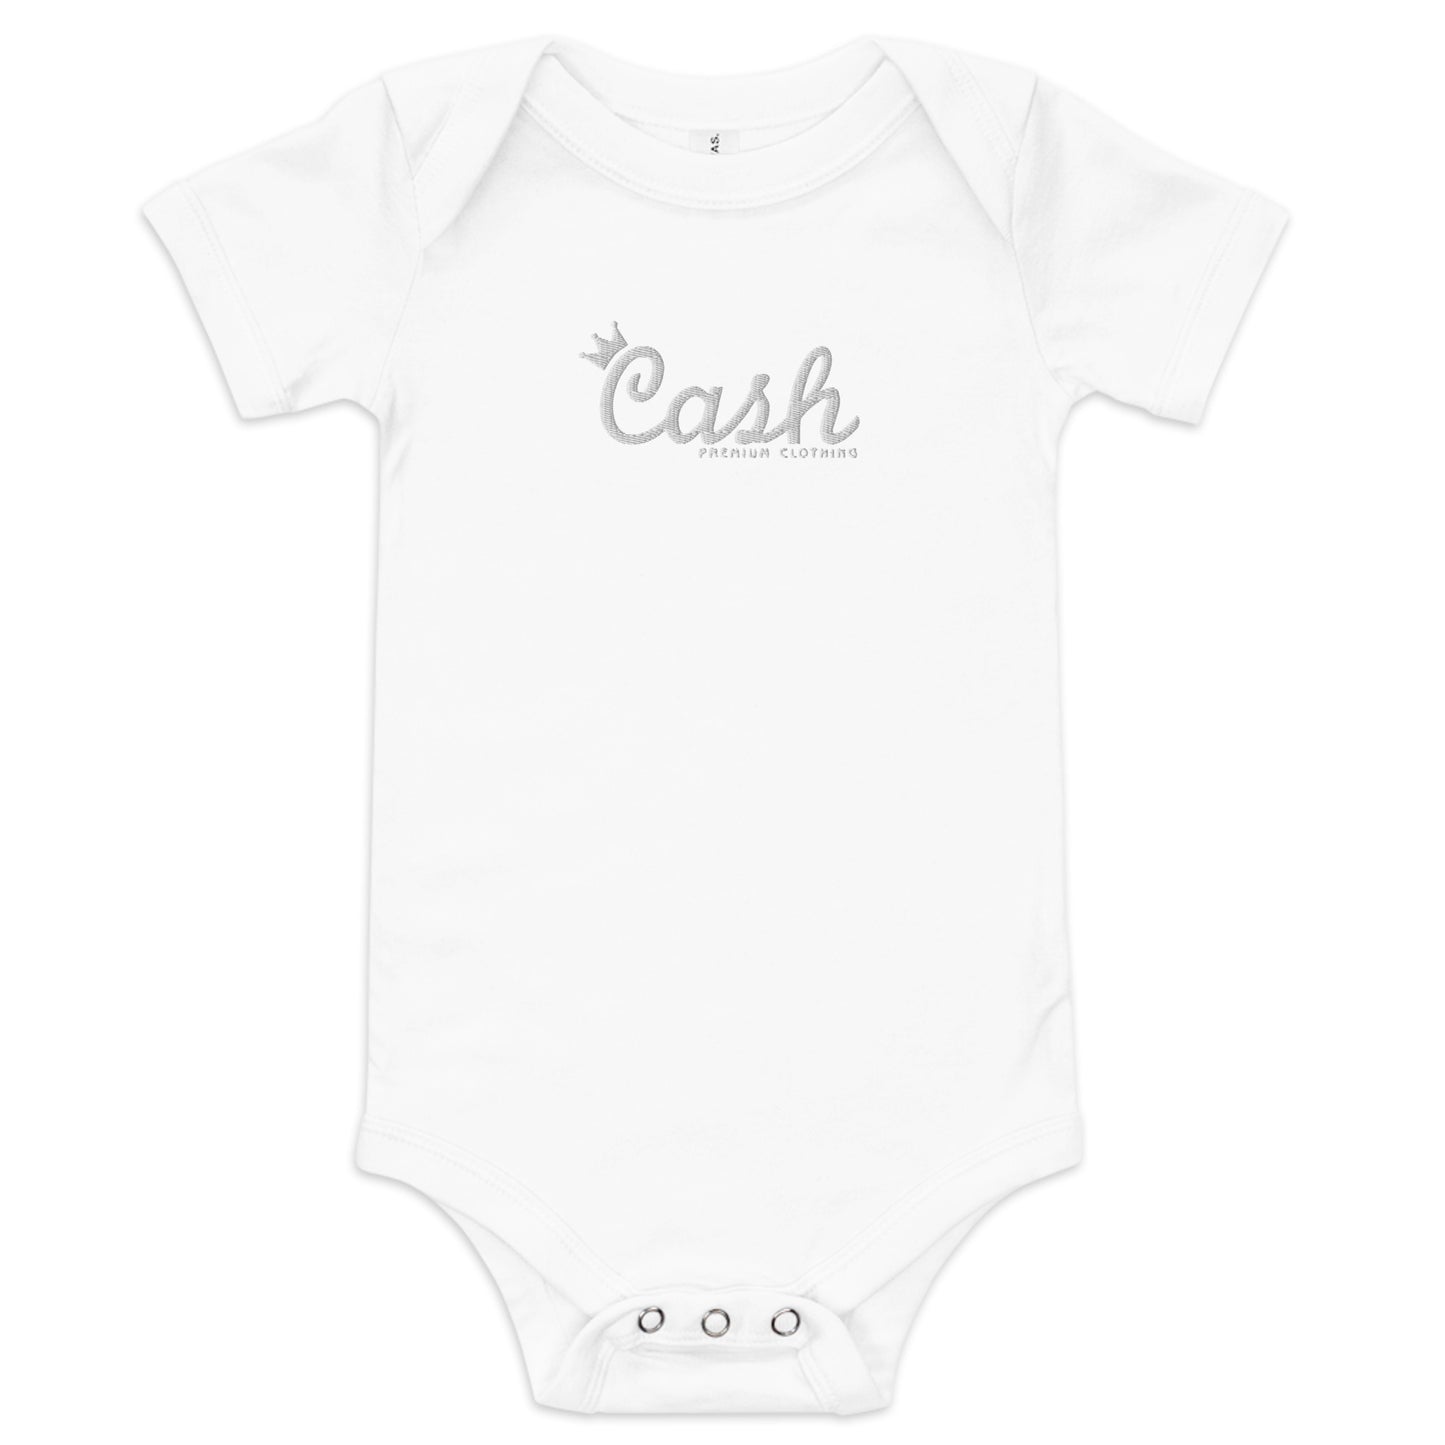 "Baby Cash" Onesie